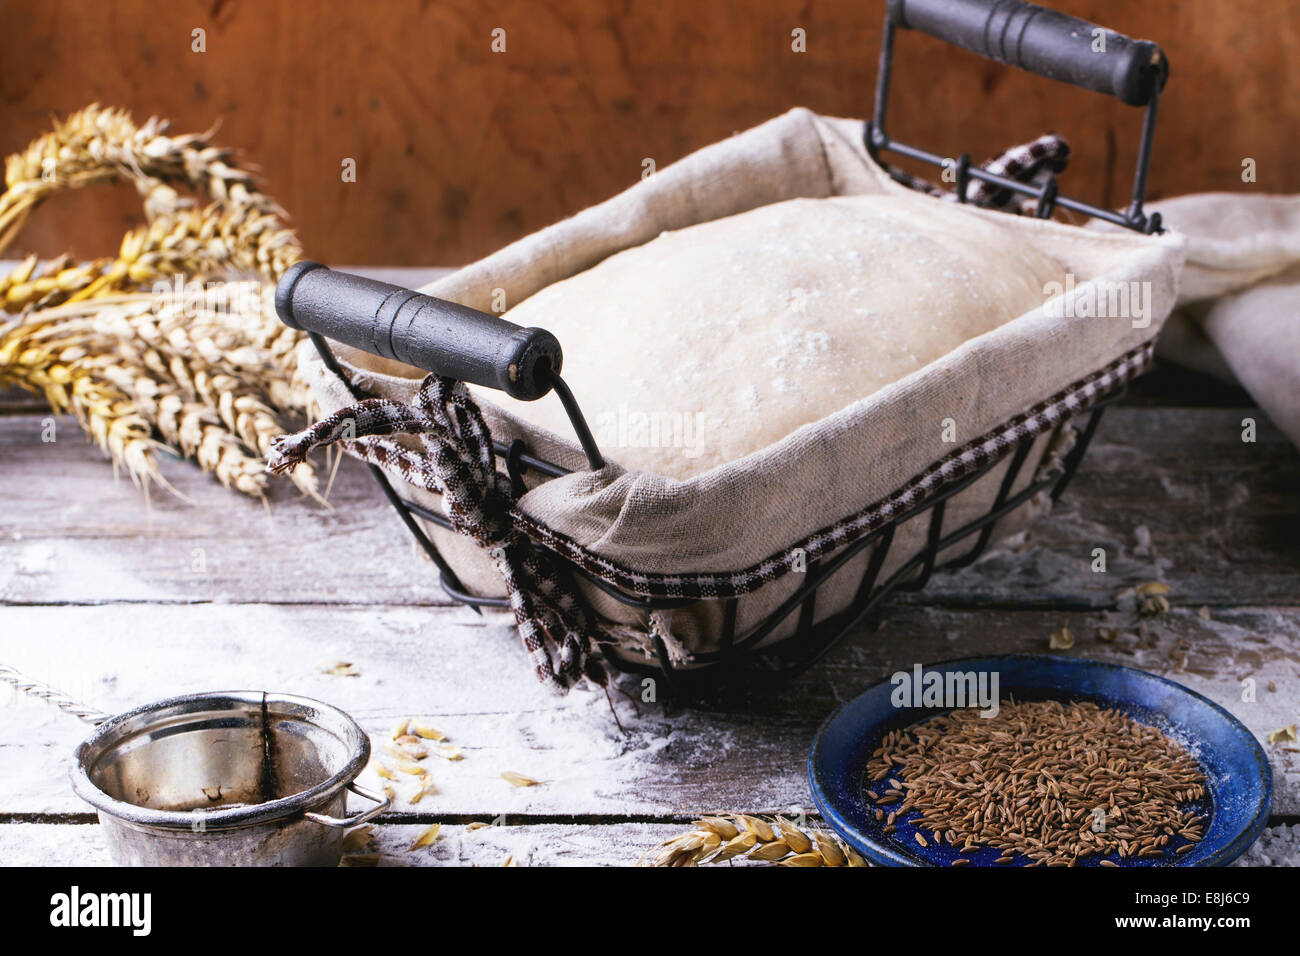 Brot backen. Teig in proofing Korb auf Holztisch mit Mehl, Kümmel und Weizen Ohren. Serien ansehen Stockfoto